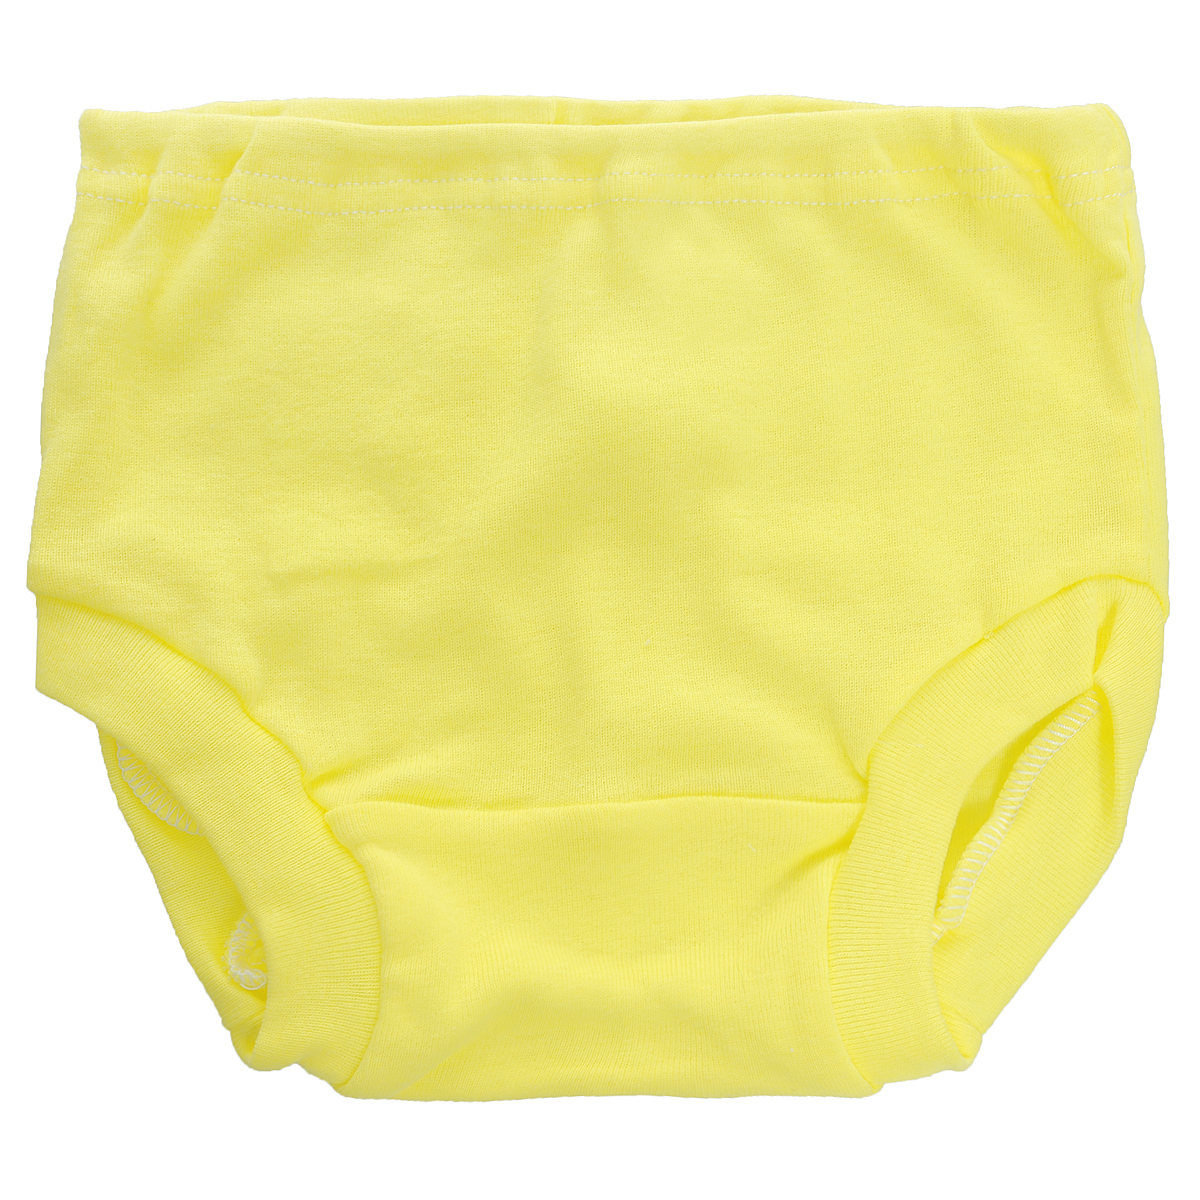 Трусы детские Трон-плюс, цвет: желтый. 8220. Размер 80, 12 месяцев